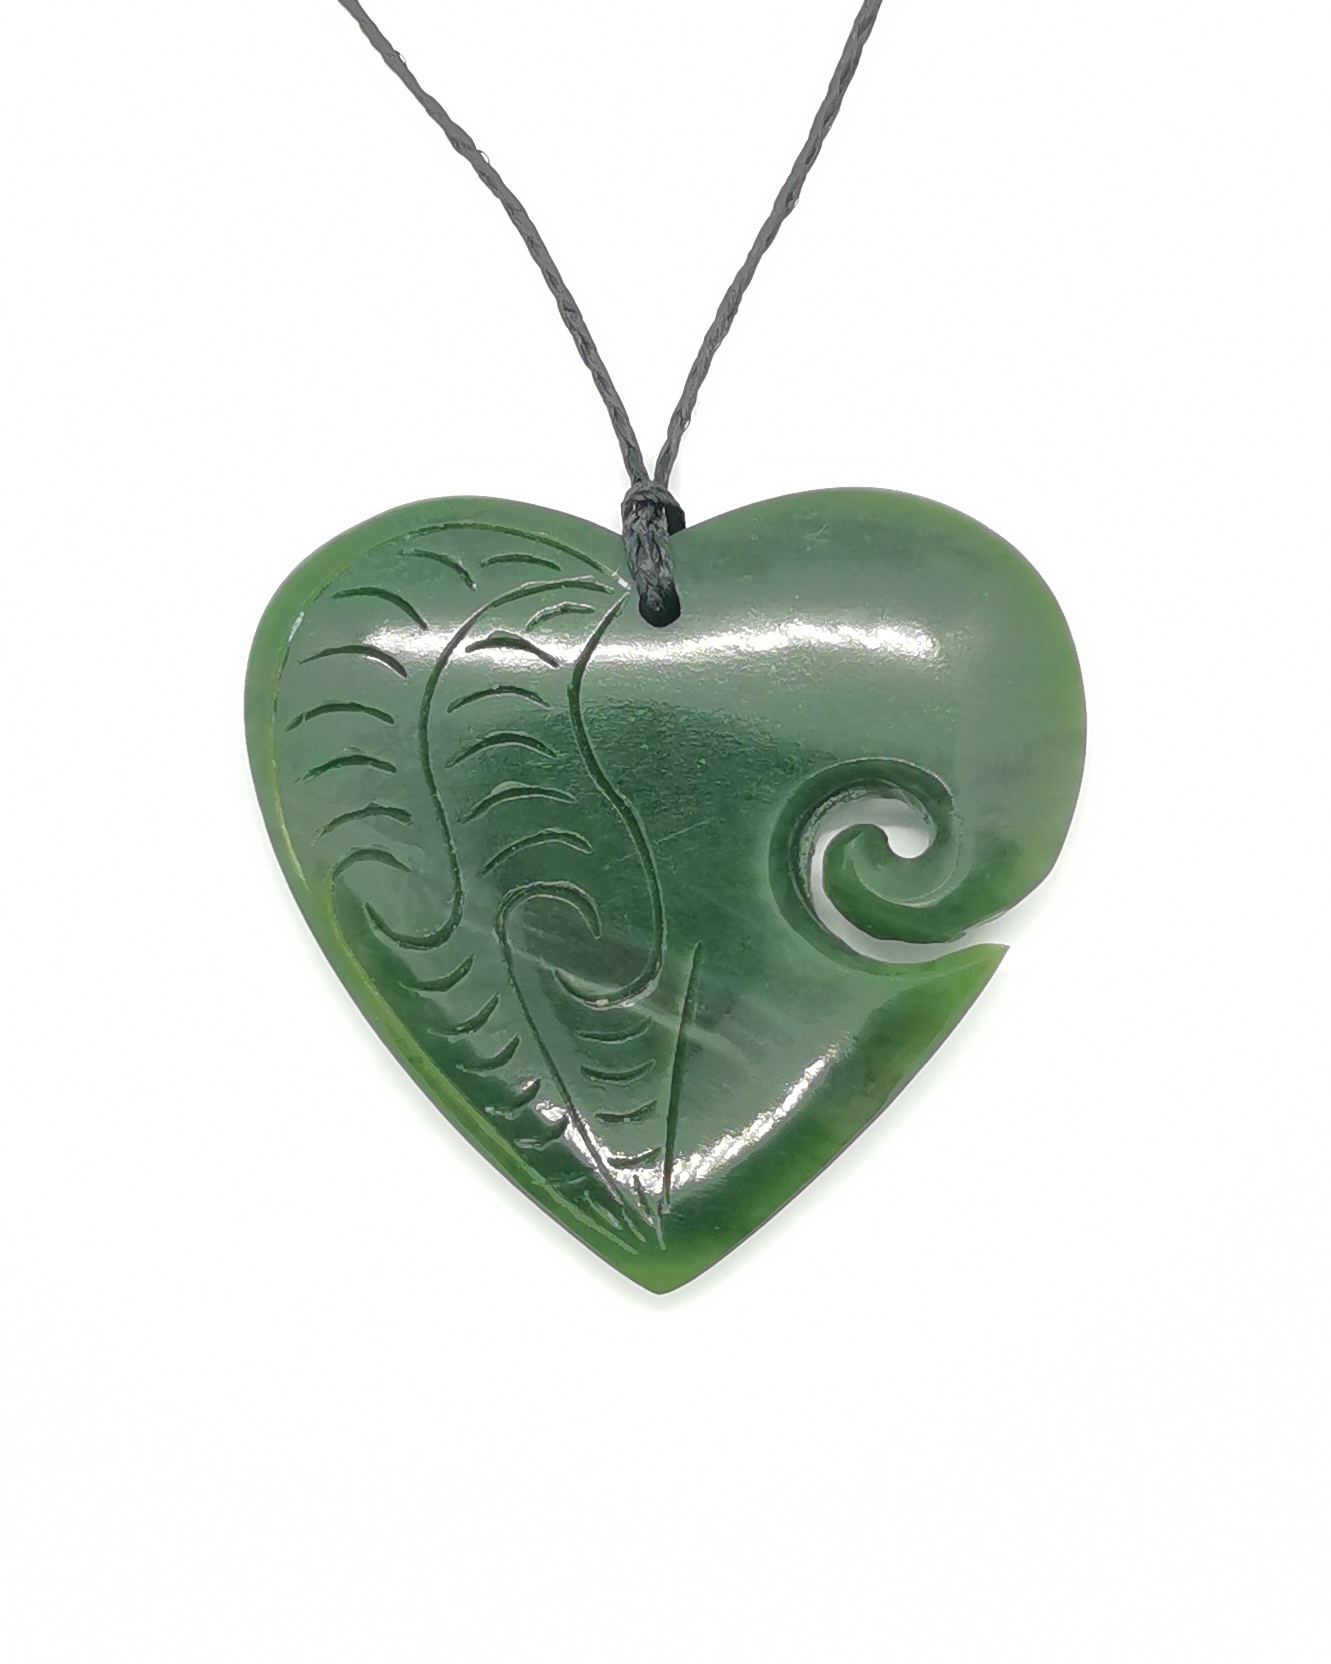 Greenstone heart koru fern pattern pendant